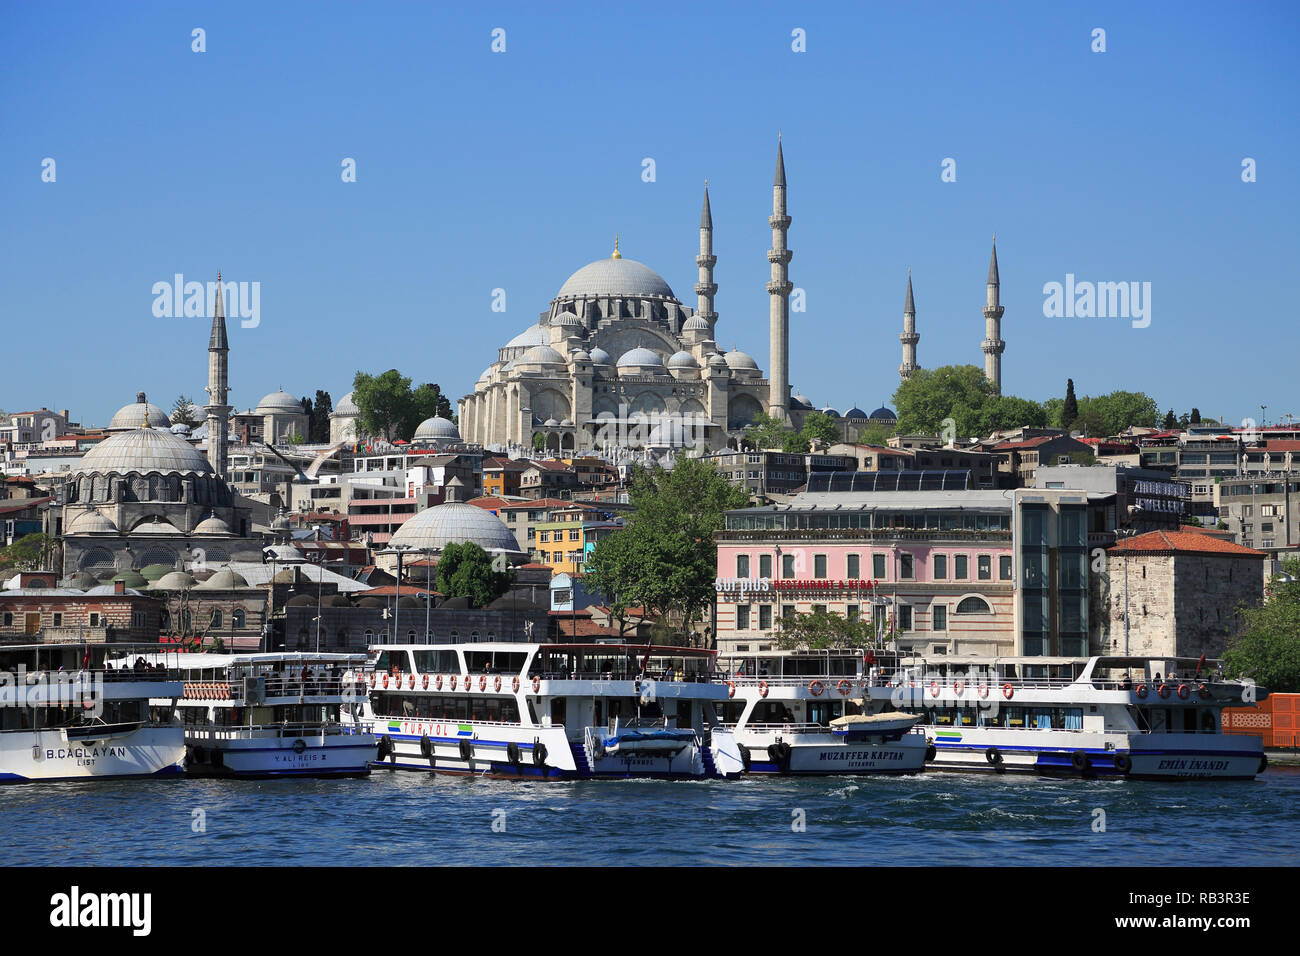 Old City, Suleymaniye Mosque, Eminonu, Golden Horn, Bosphorus, Istanbul, Turkey, Europe Stock Photo